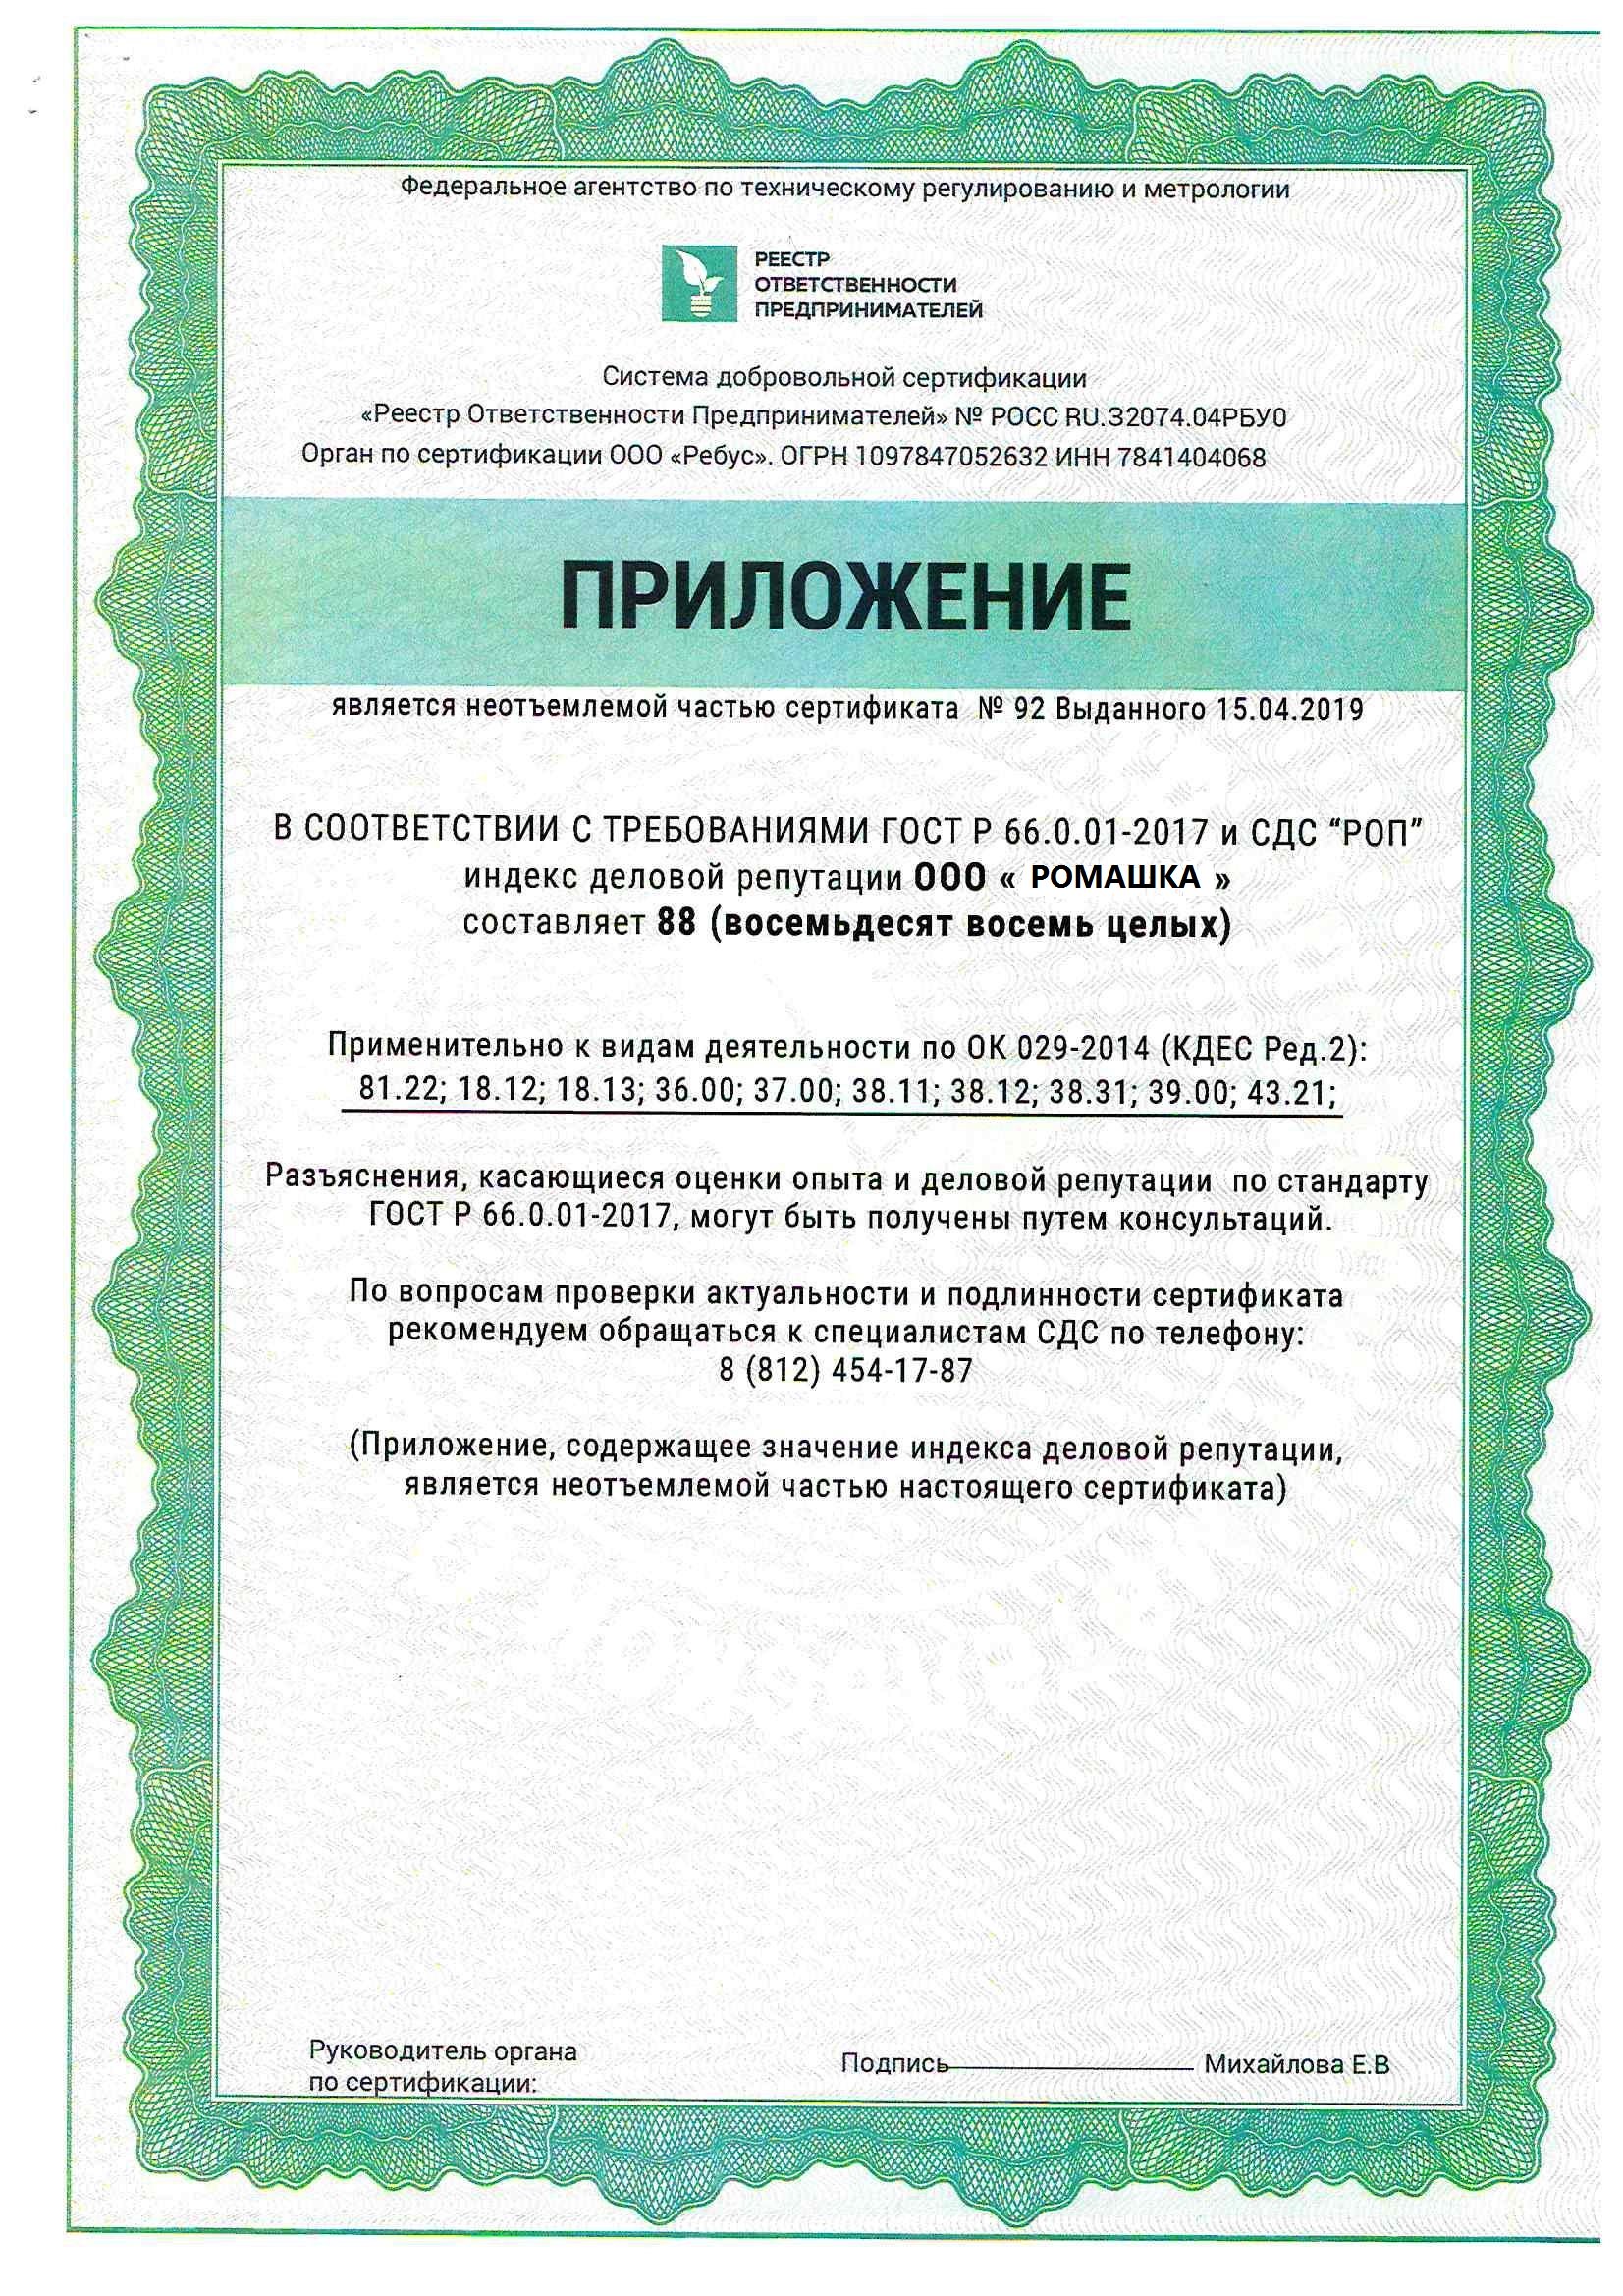 Сертификат системы добровольной сертификации СДС «РОП»